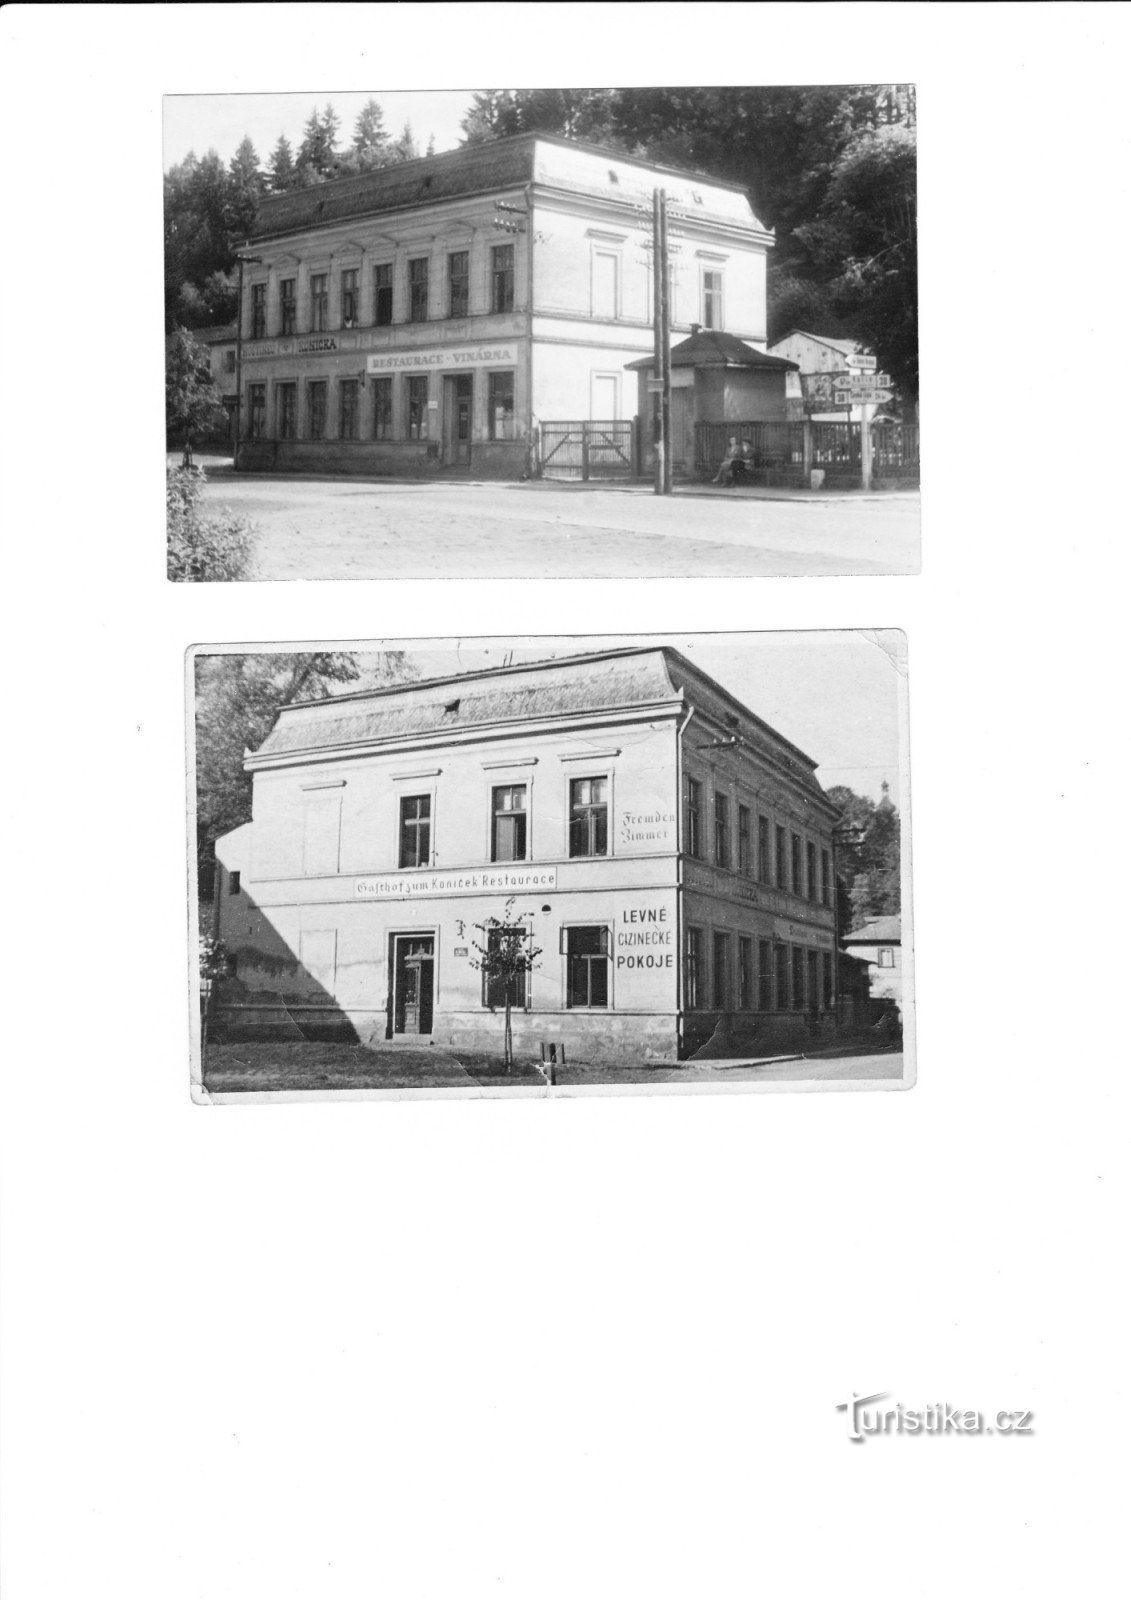 oryginalny hotel Koníček - własność dziadka pana Senekla